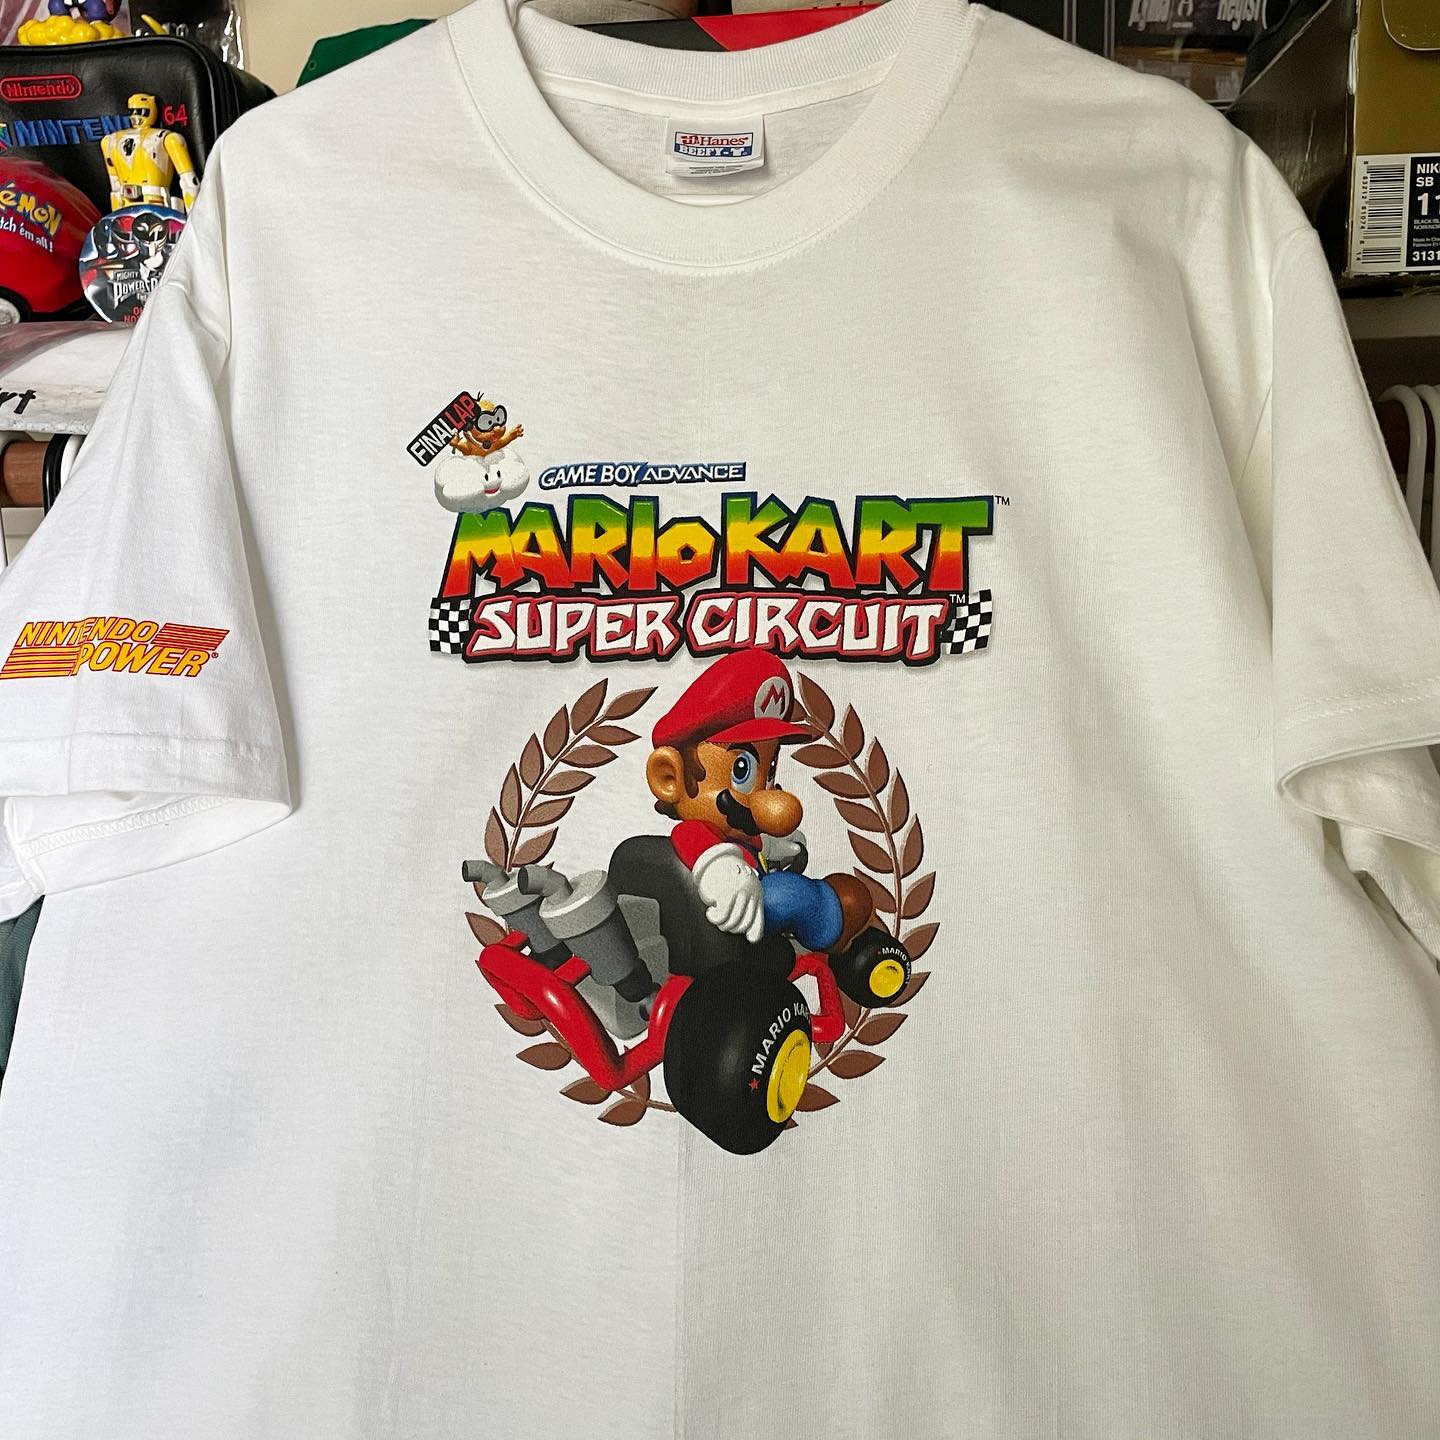 哆啦o梦的口袋 好物集市质感宽松百搭小众潮牌短袖T恤设计感美潮